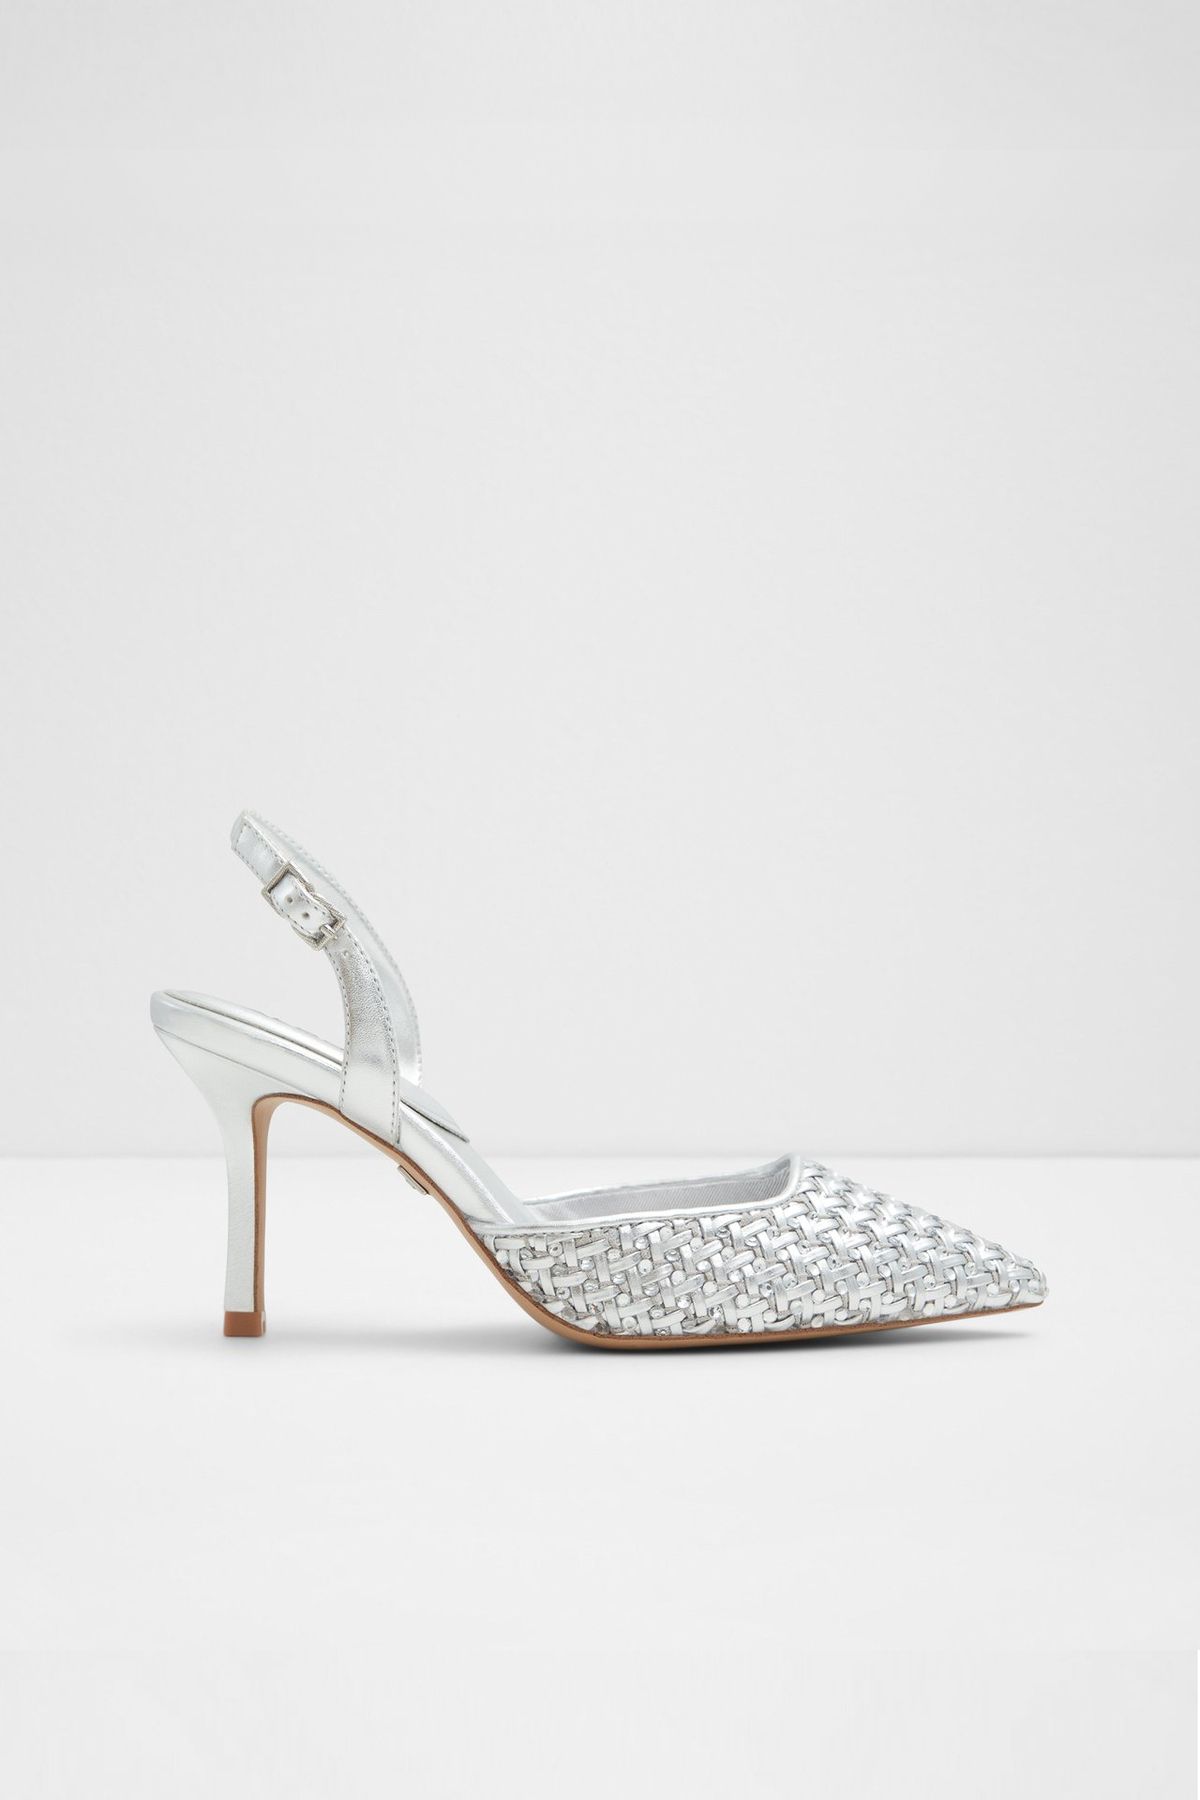 Aldo ELEONORE - Gümüş Kadın Topuklu Ayakkabı ELEONORE-040-002-029